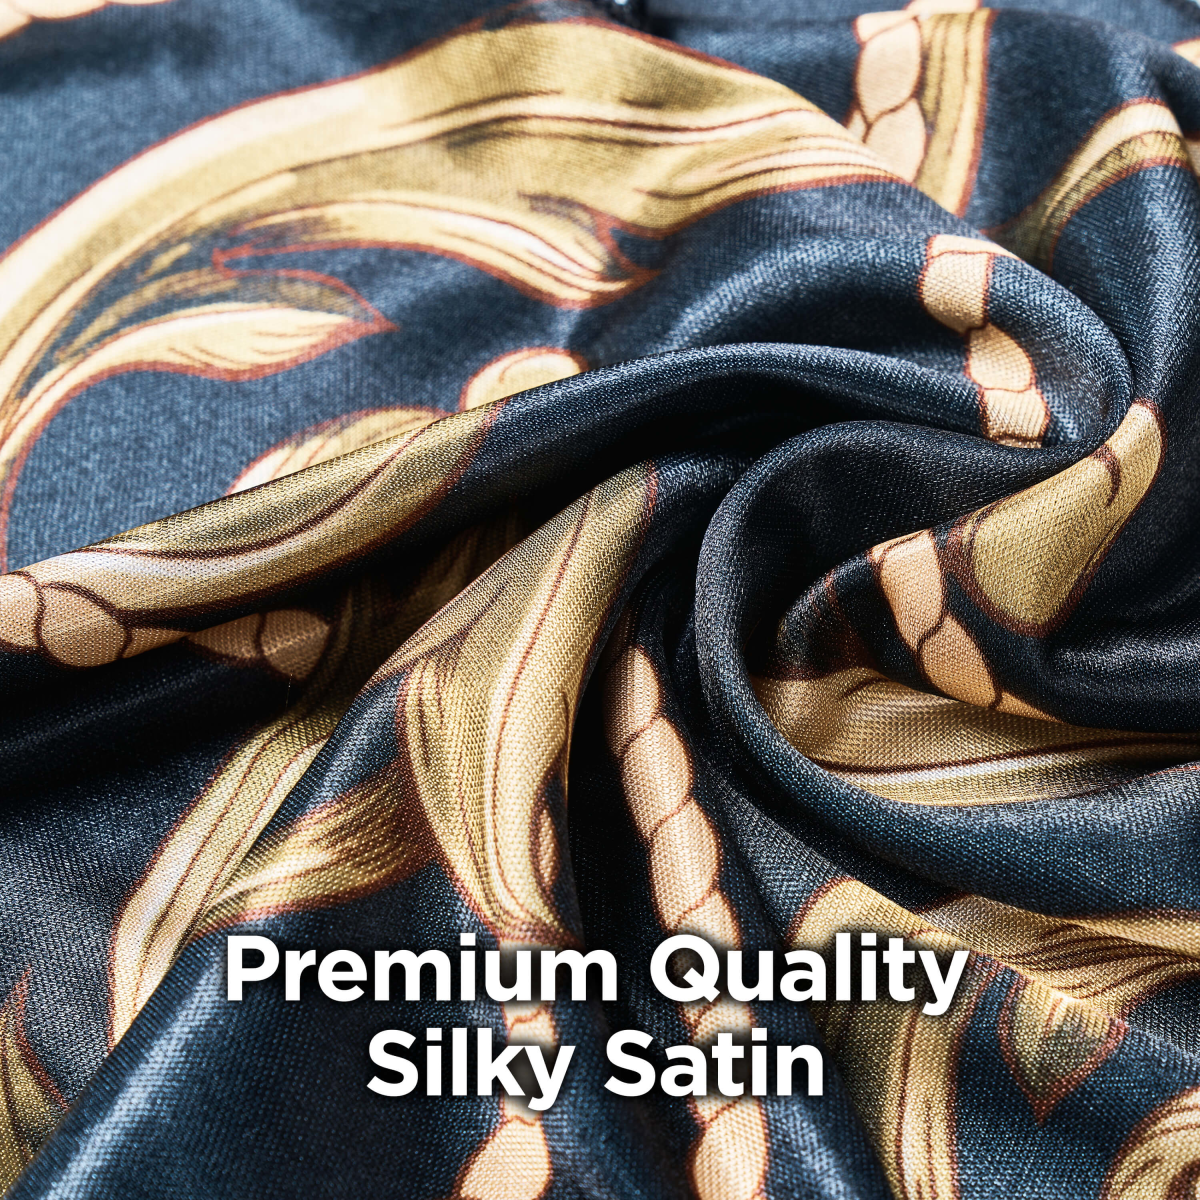 Power Wave Silky Satin Pattern Durag - Black/Gold